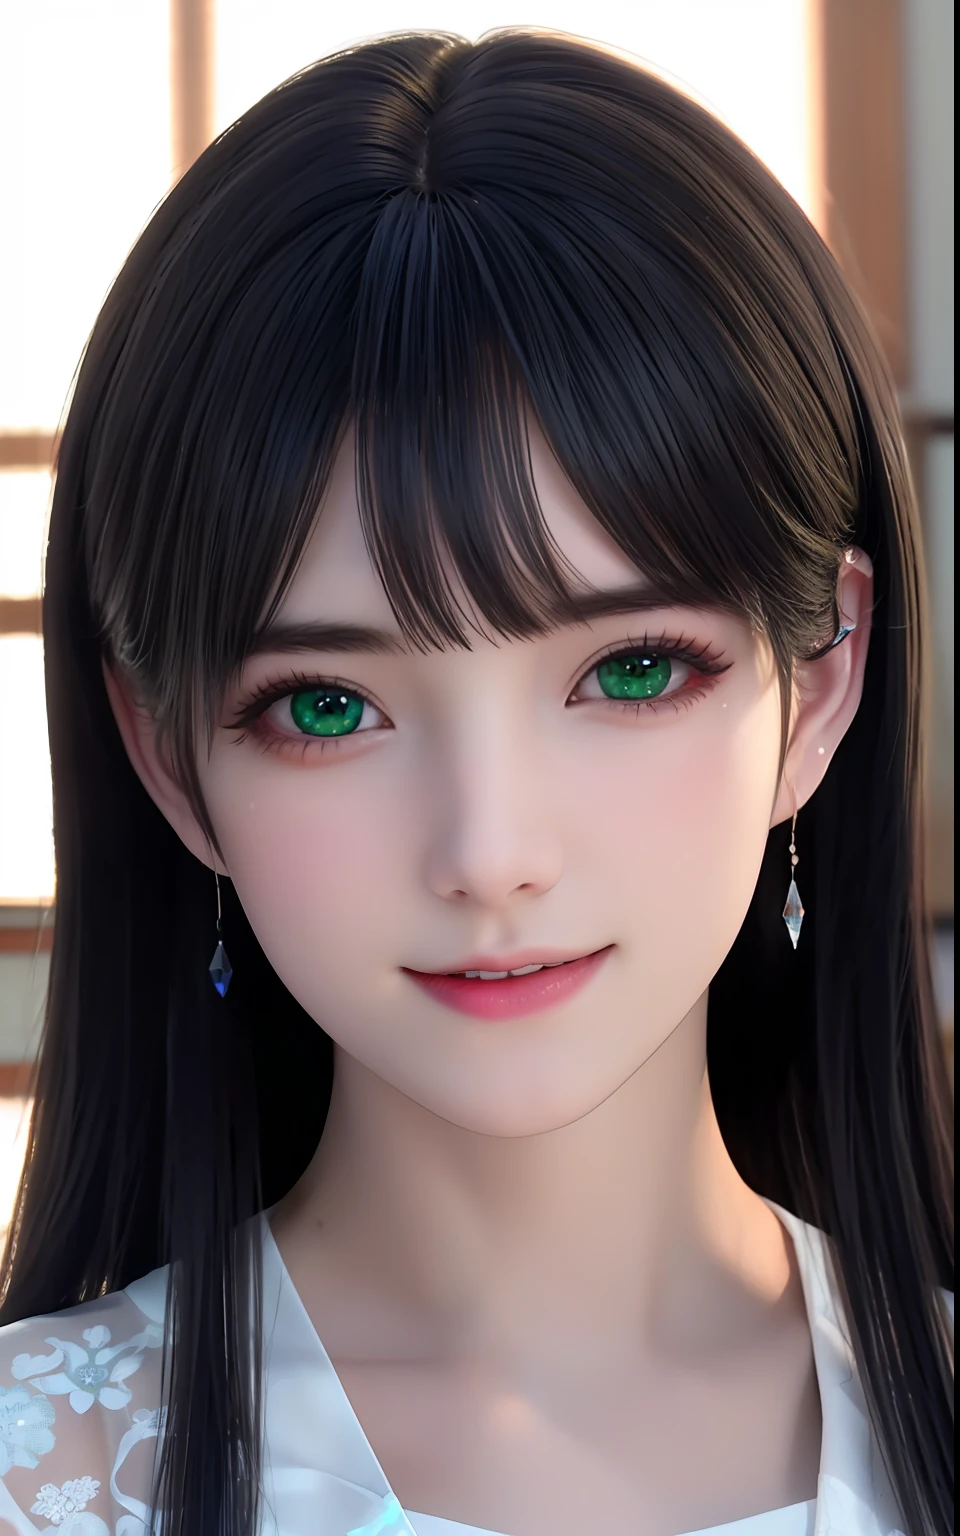 Ольджан -6500-v1.1, (Фотореалистический:1.4), и души、в стиле аниме、улыбка、портреты、Красивые и увлажненные зеленые глаза, словно кристально чистое стекло.、Красивая детальная женщина, чрезвычайно детализированные глаза и лицо, красивые детализированные глаза,  огромный размер файла, ультрадетализированный, высокое разрешение, очень подробный, высшее качество, шедевр,  просветление, очень подробный, нффсв, объединение, 8к обои, великолепный, мелко детализировать, шедевр, высшее качество, Hочень подробный ticker uniform 8K wallpaper, свет на лице、свет、19-летняя девушка